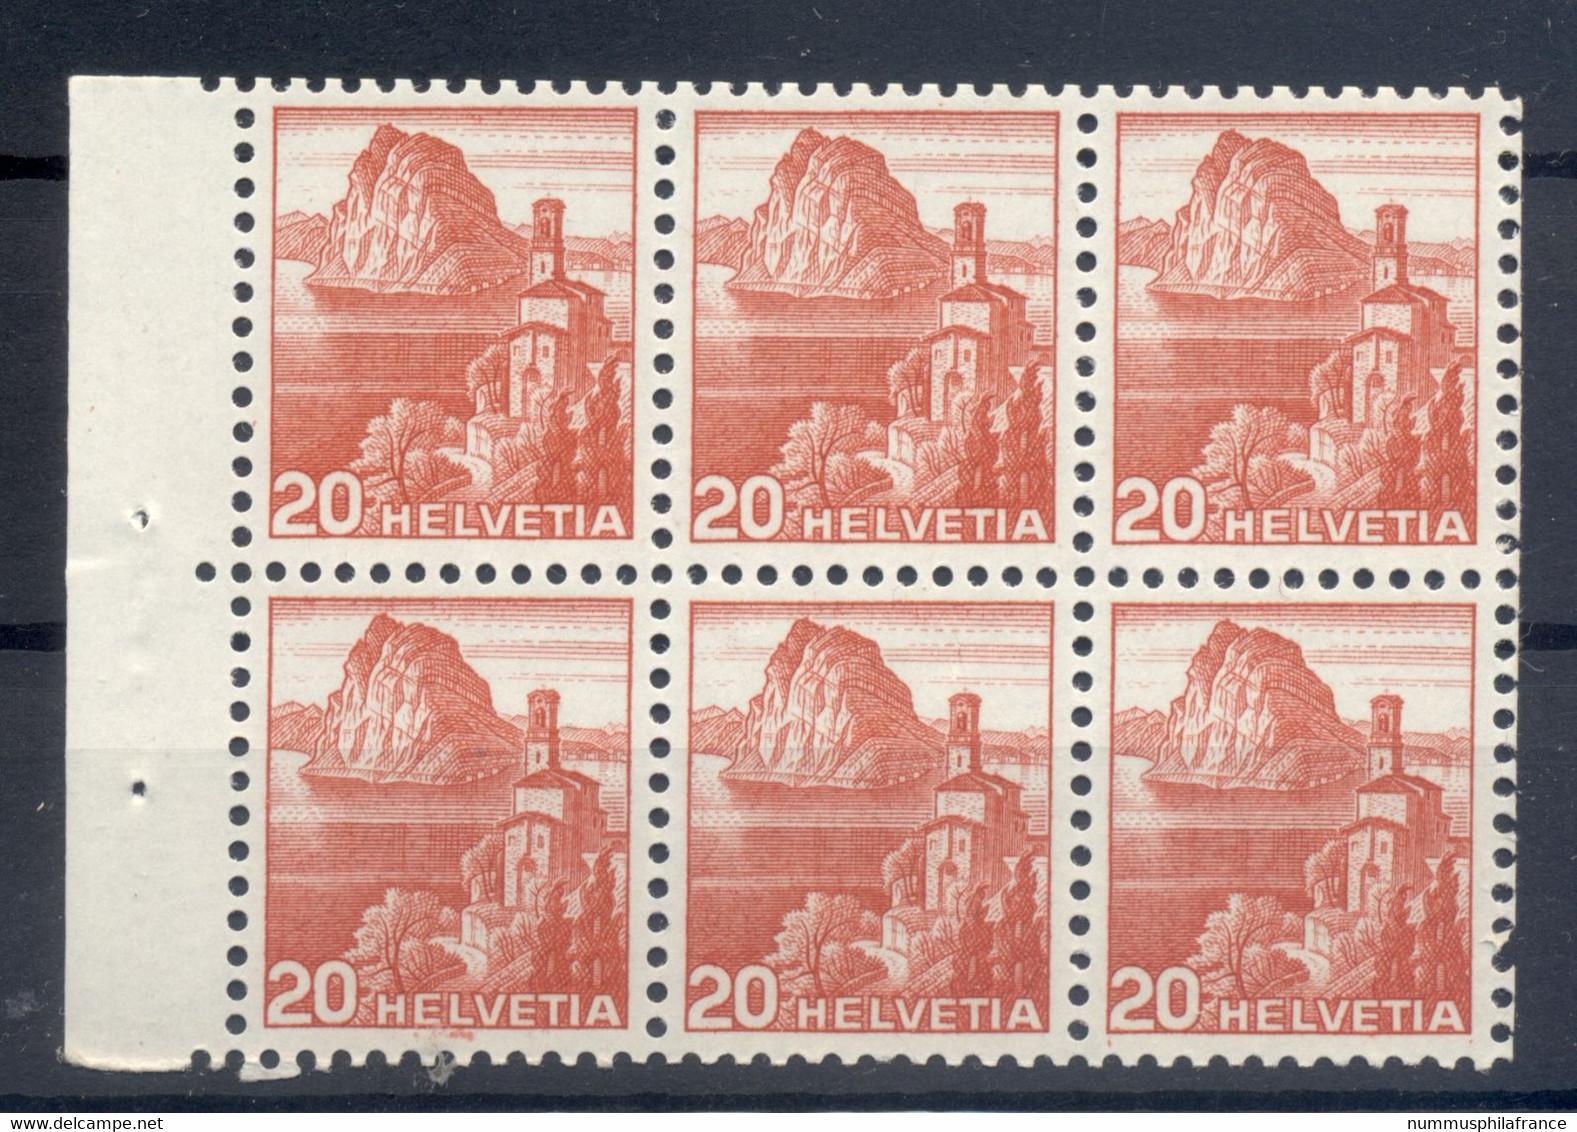 Suisse  1938 - Y & T N. 312 - Série Courante (Michel N. HB - 38) - Unused Stamps